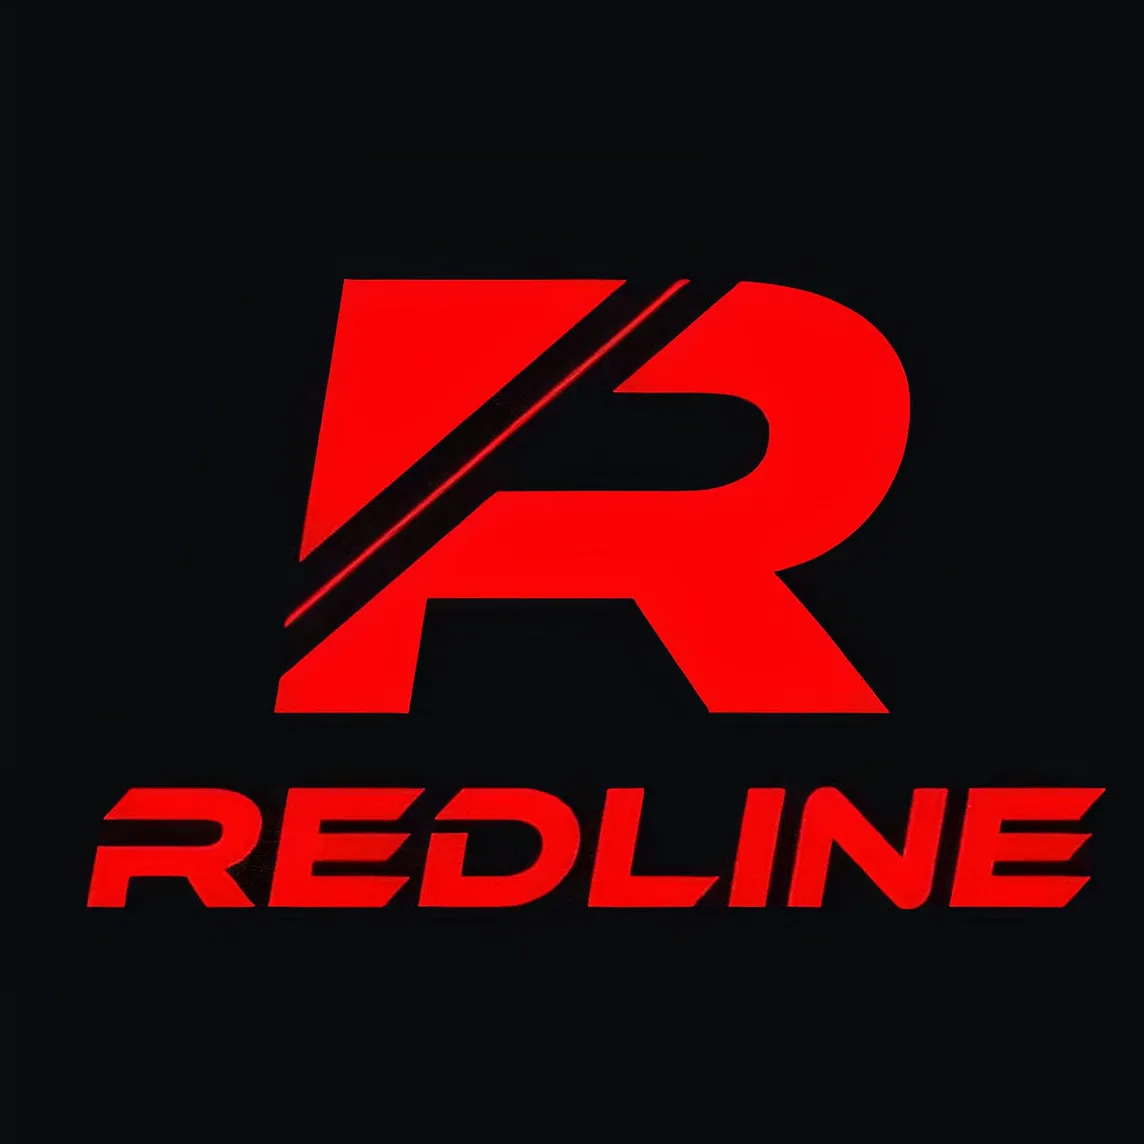 RedLine Stealer basic analysis